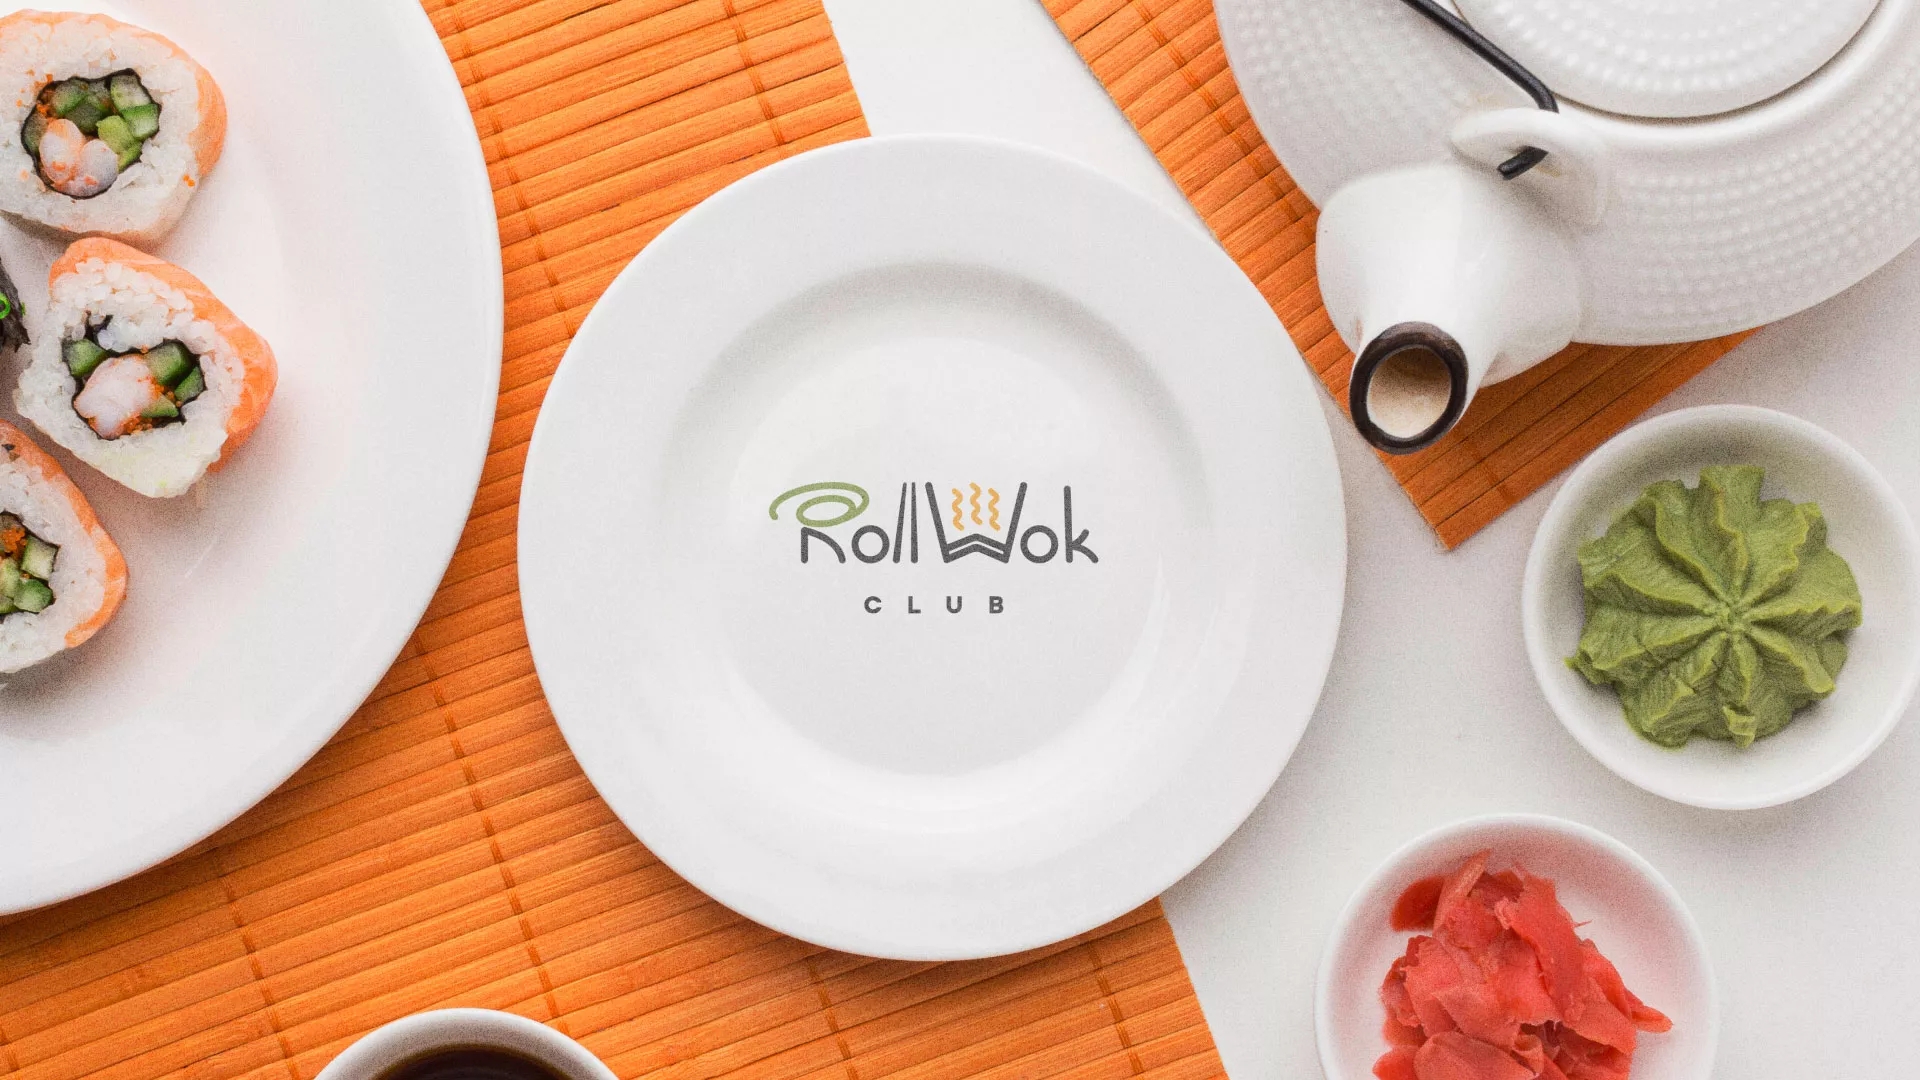 Разработка логотипа и фирменного стиля суши-бара «Roll Wok Club» в Ступино